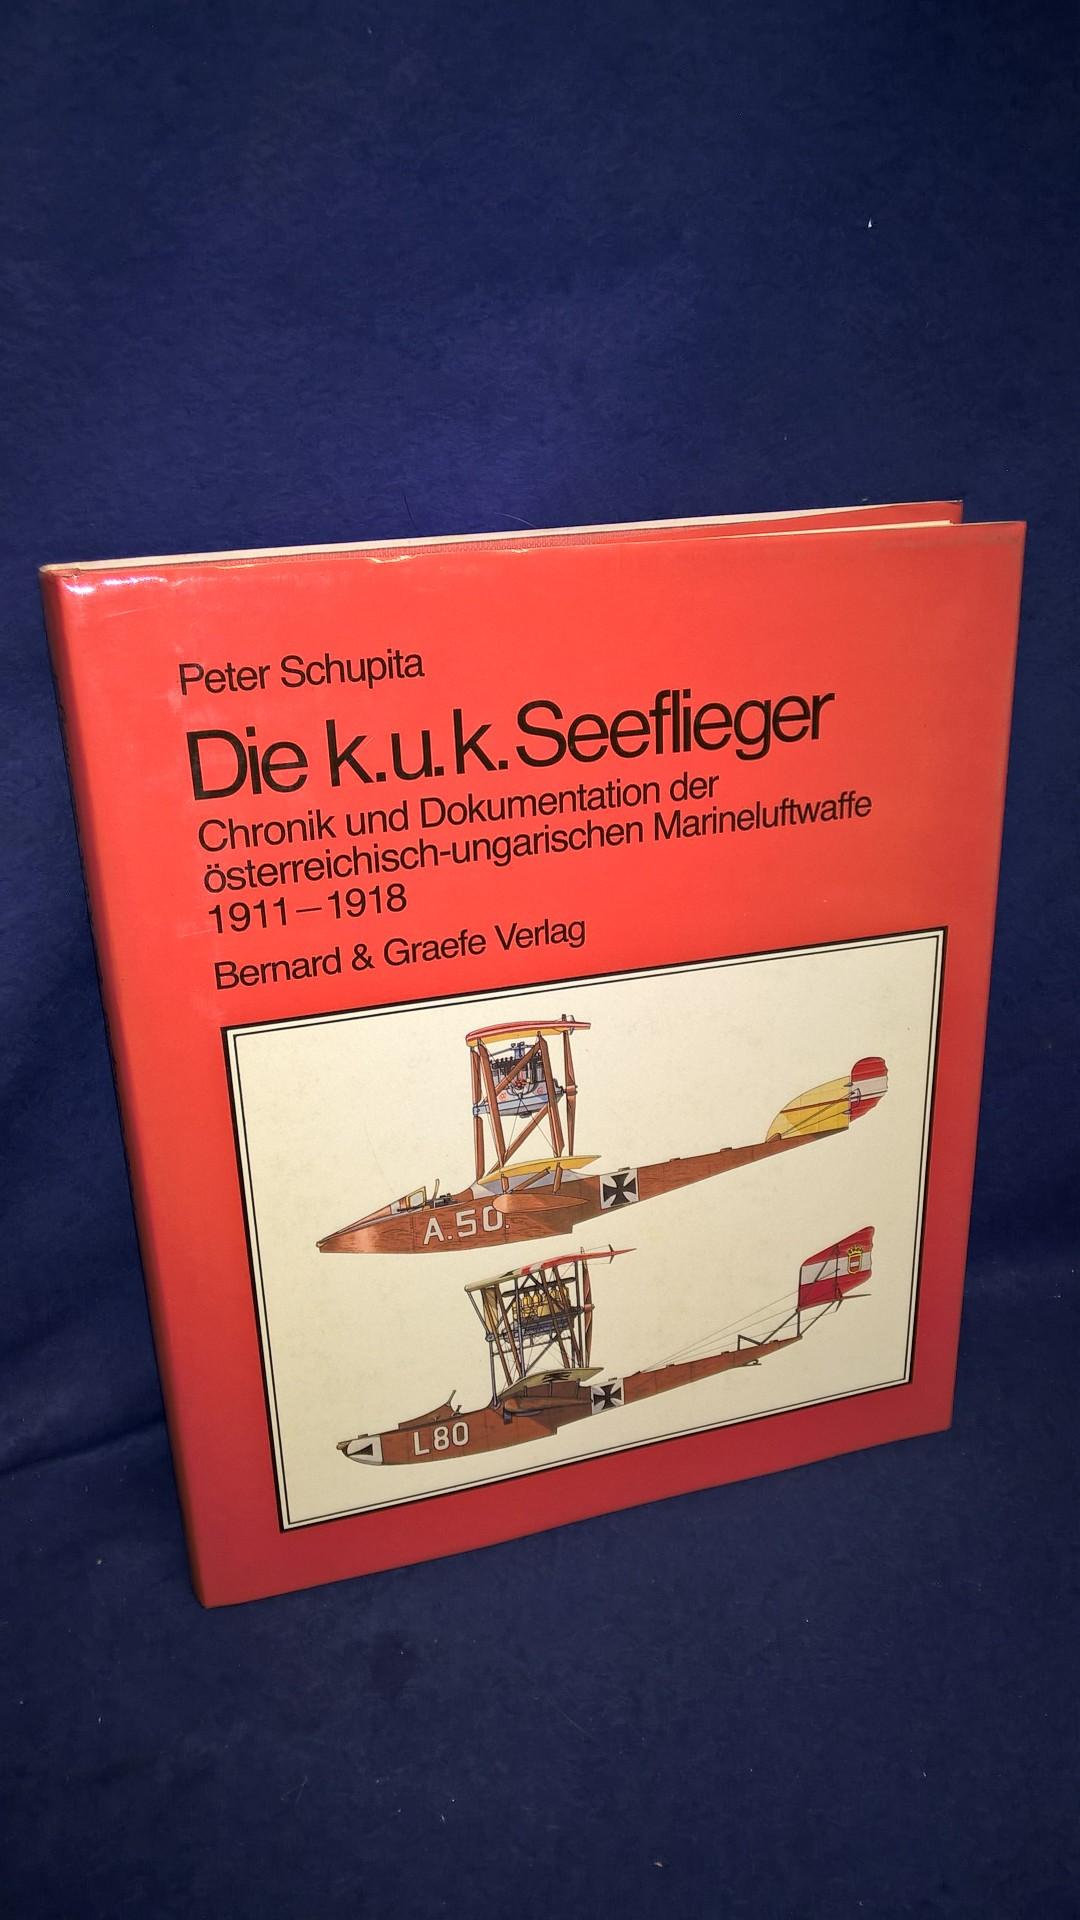 Die k.u.k. Seeflieger. Chronik und Dokumentation der österreichisch-ungarischen Marineluftwaffe 1911 - 1918.